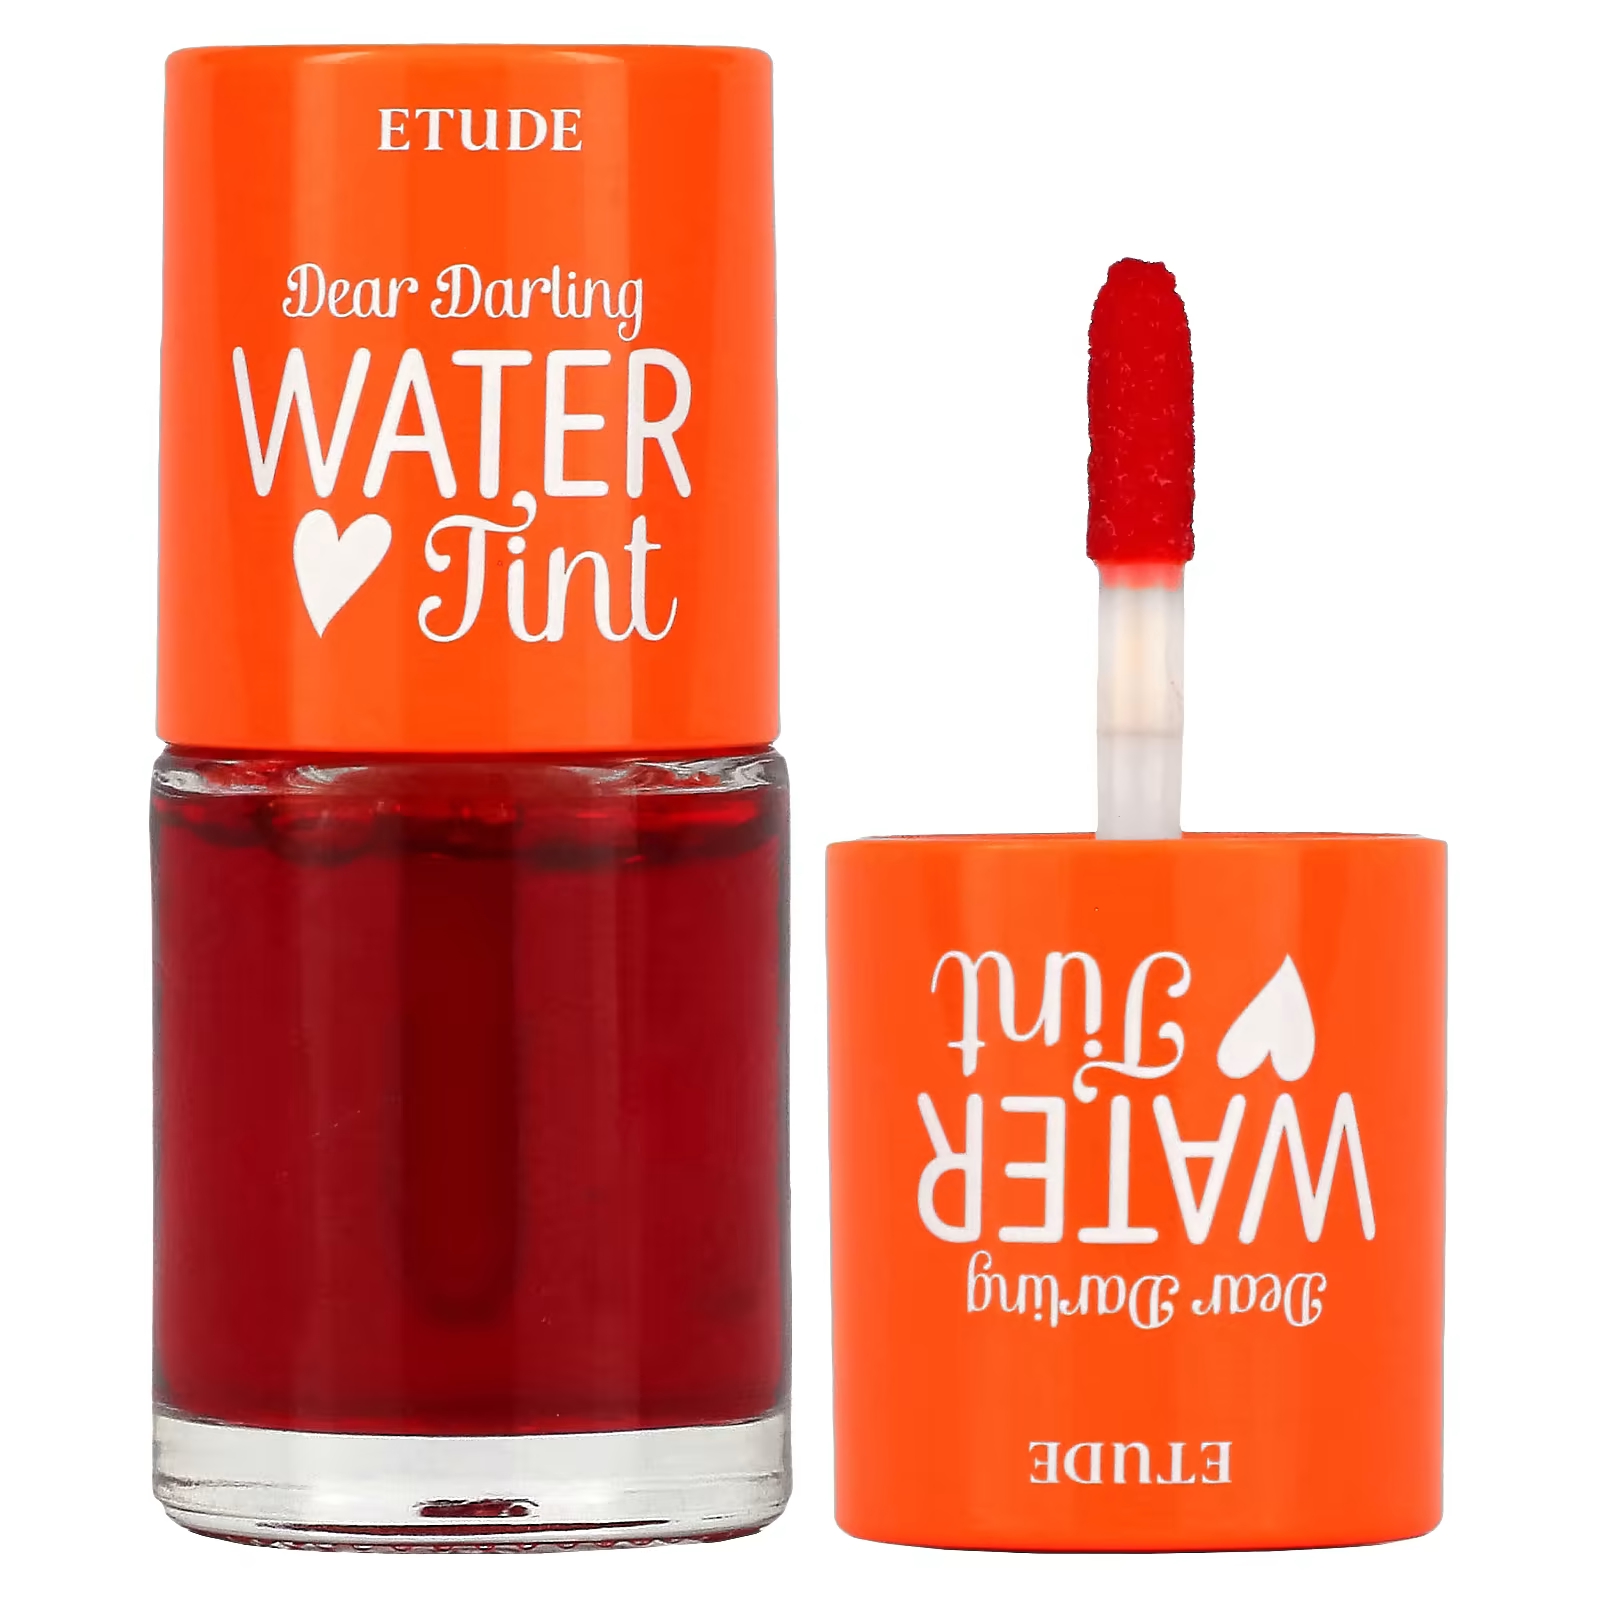 Etude Dear Darling Water Tint Orange Ade 9,5 г водный тинт для губ век и щёк оттенок red apple